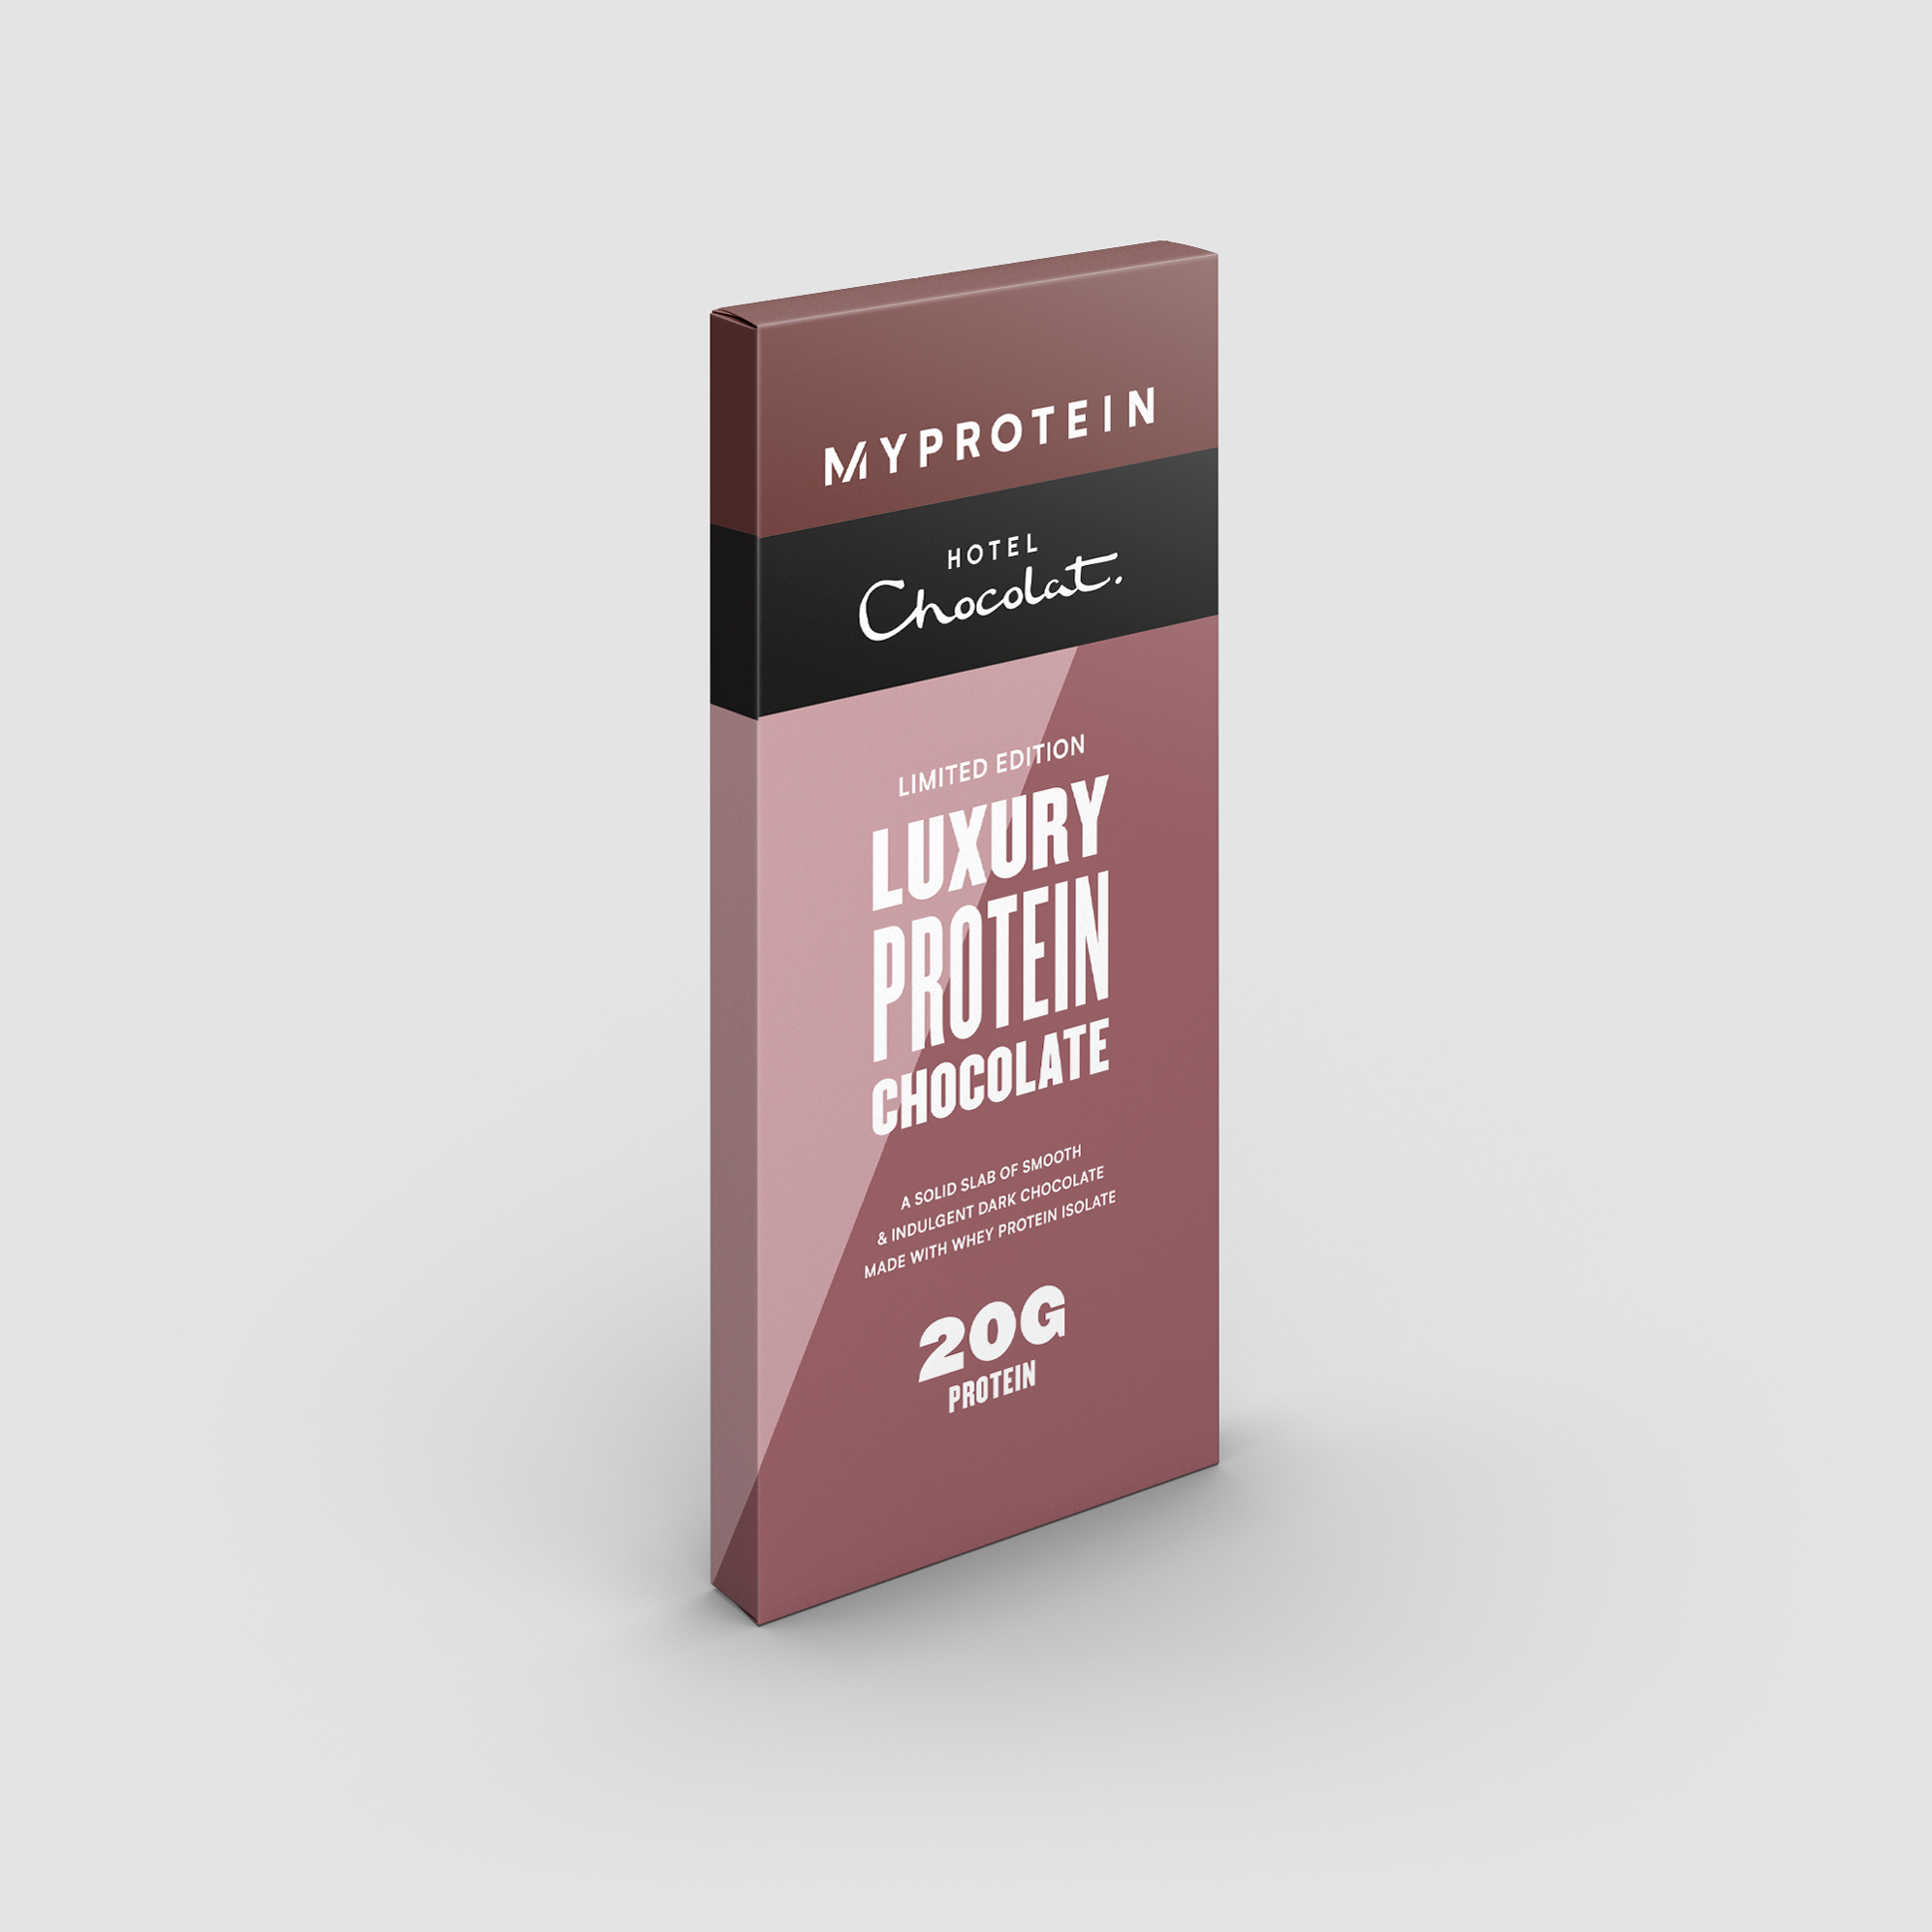 Myprotein X Hotel Chocolat Luxury Protein Chocolate